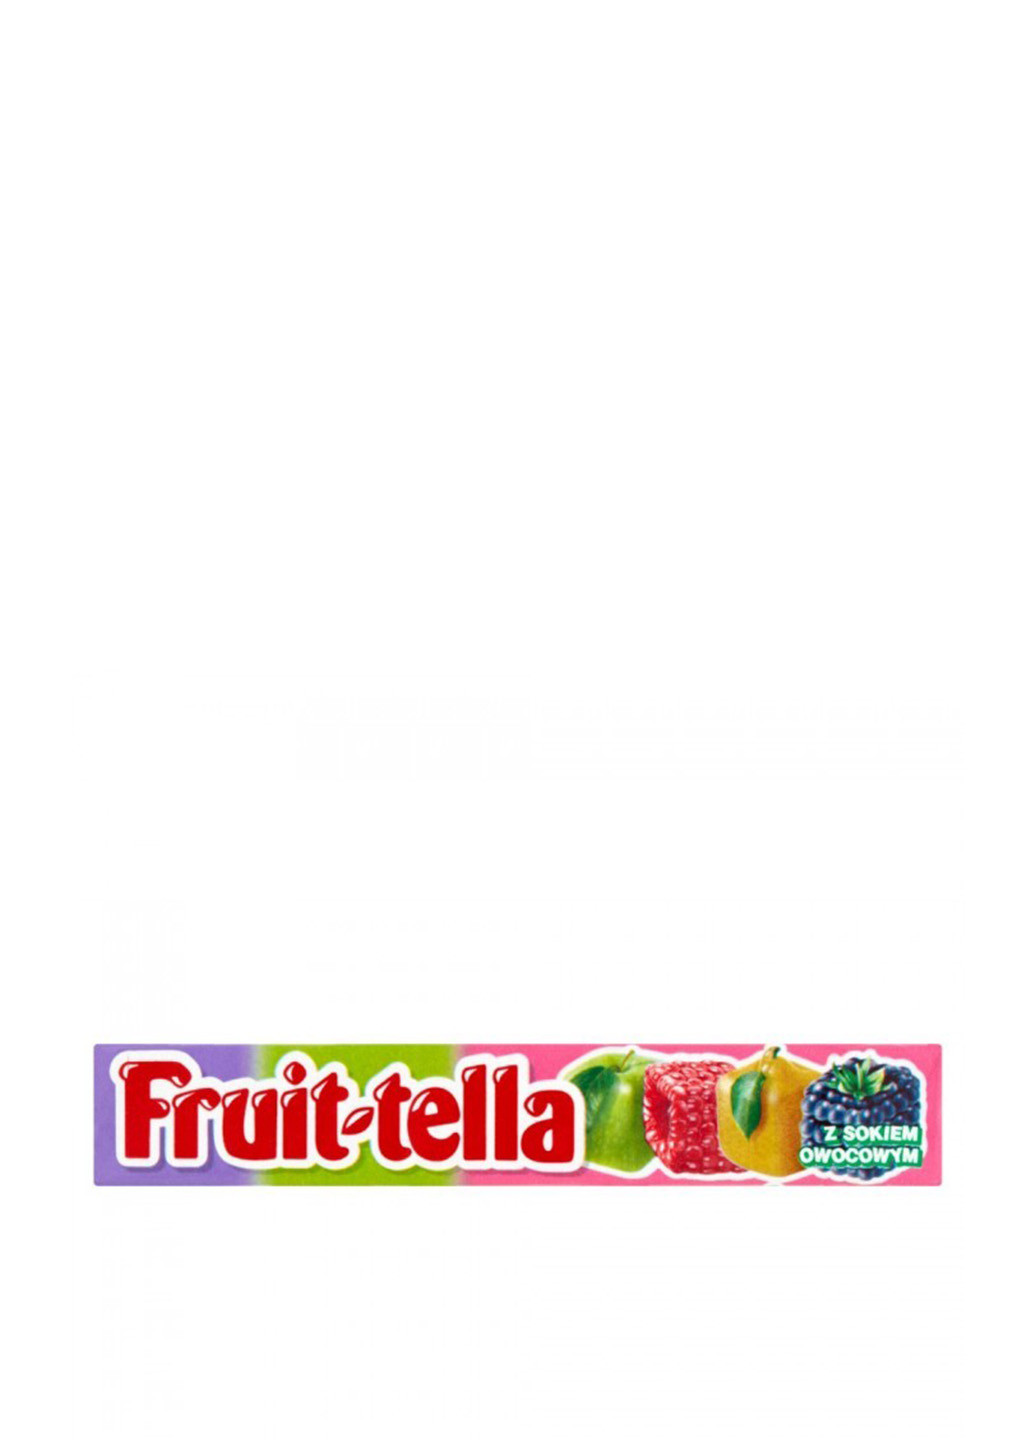 Цукерка жувальна Садові фрукти, 41 г Fruittella (94992949)